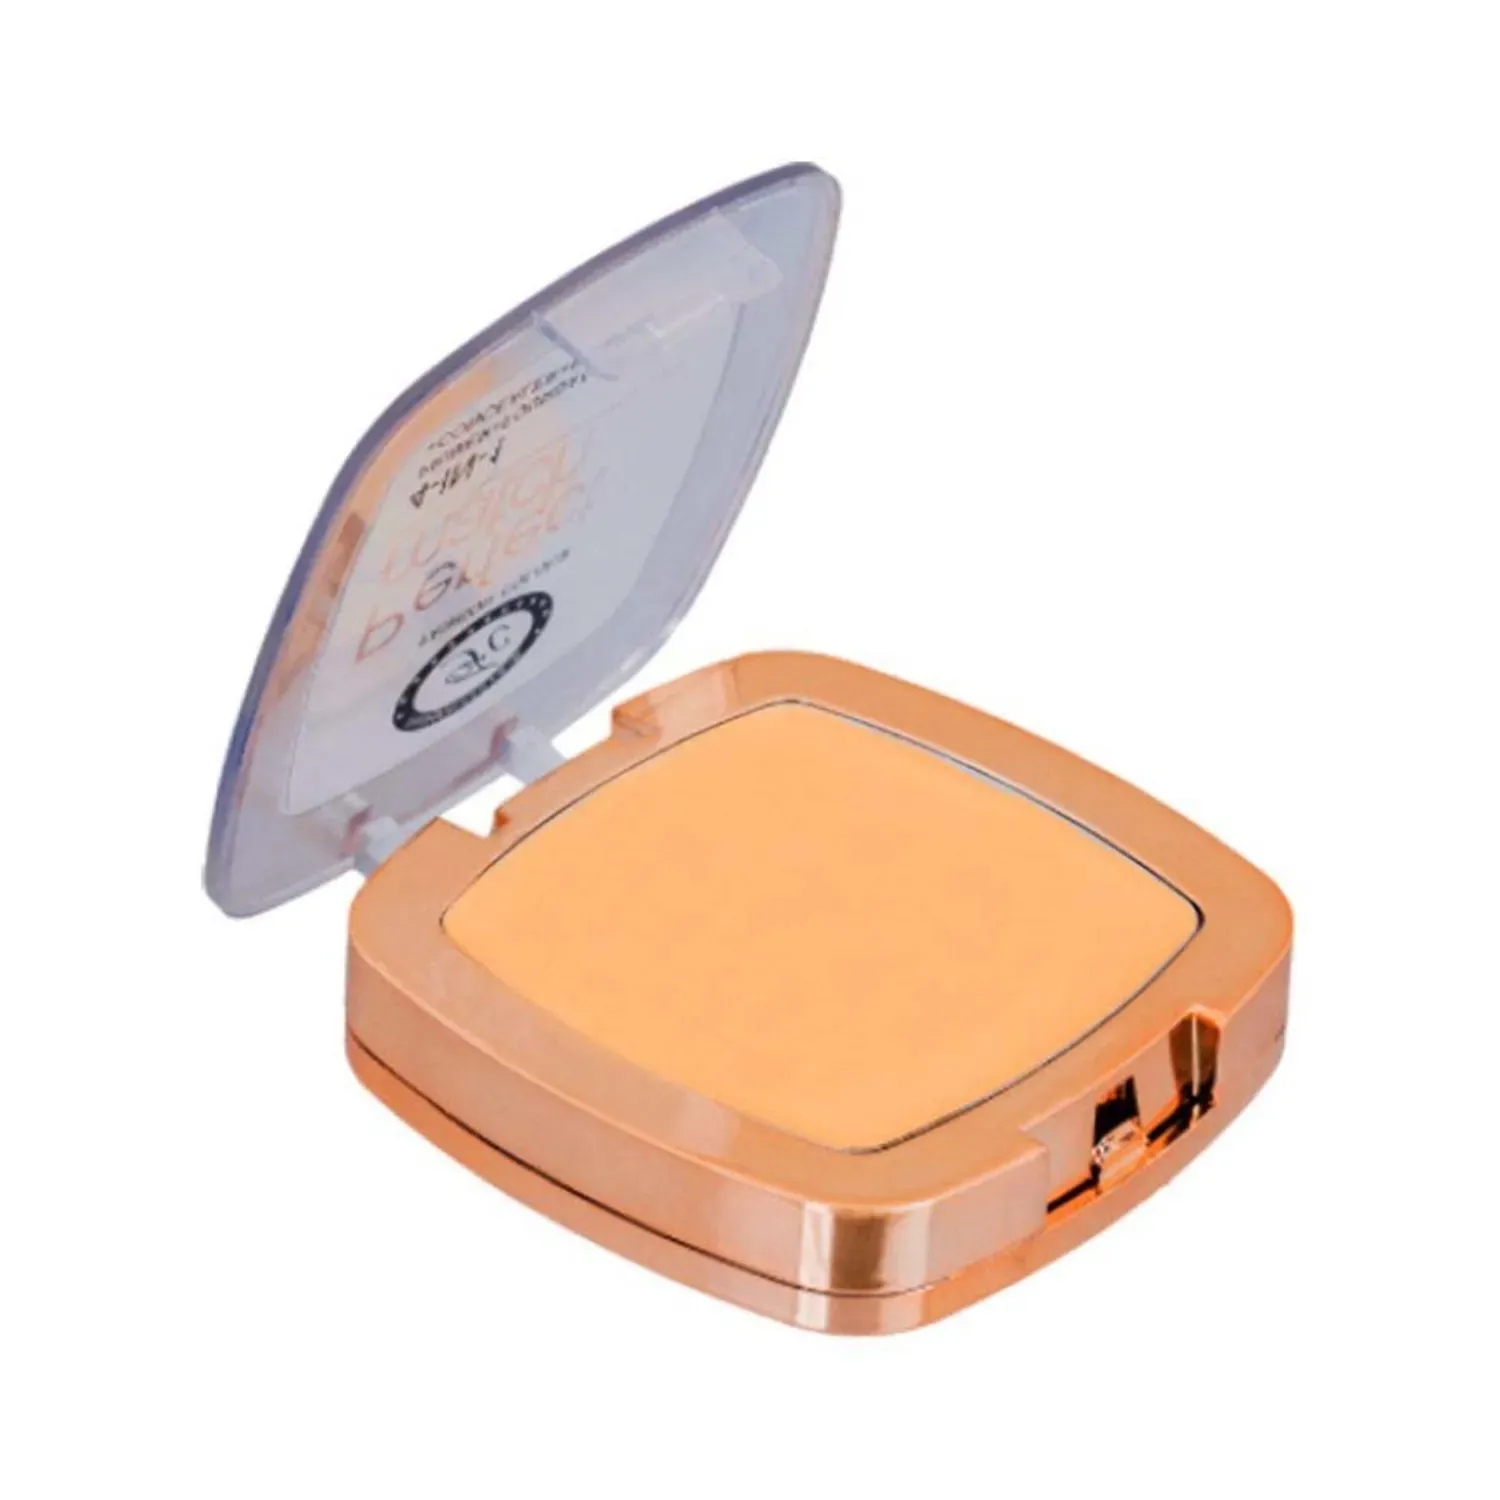 Fashion Colour | Fashion Colour 4-In-1 Perfect Match Compact Powder - 02 Shade (7g)